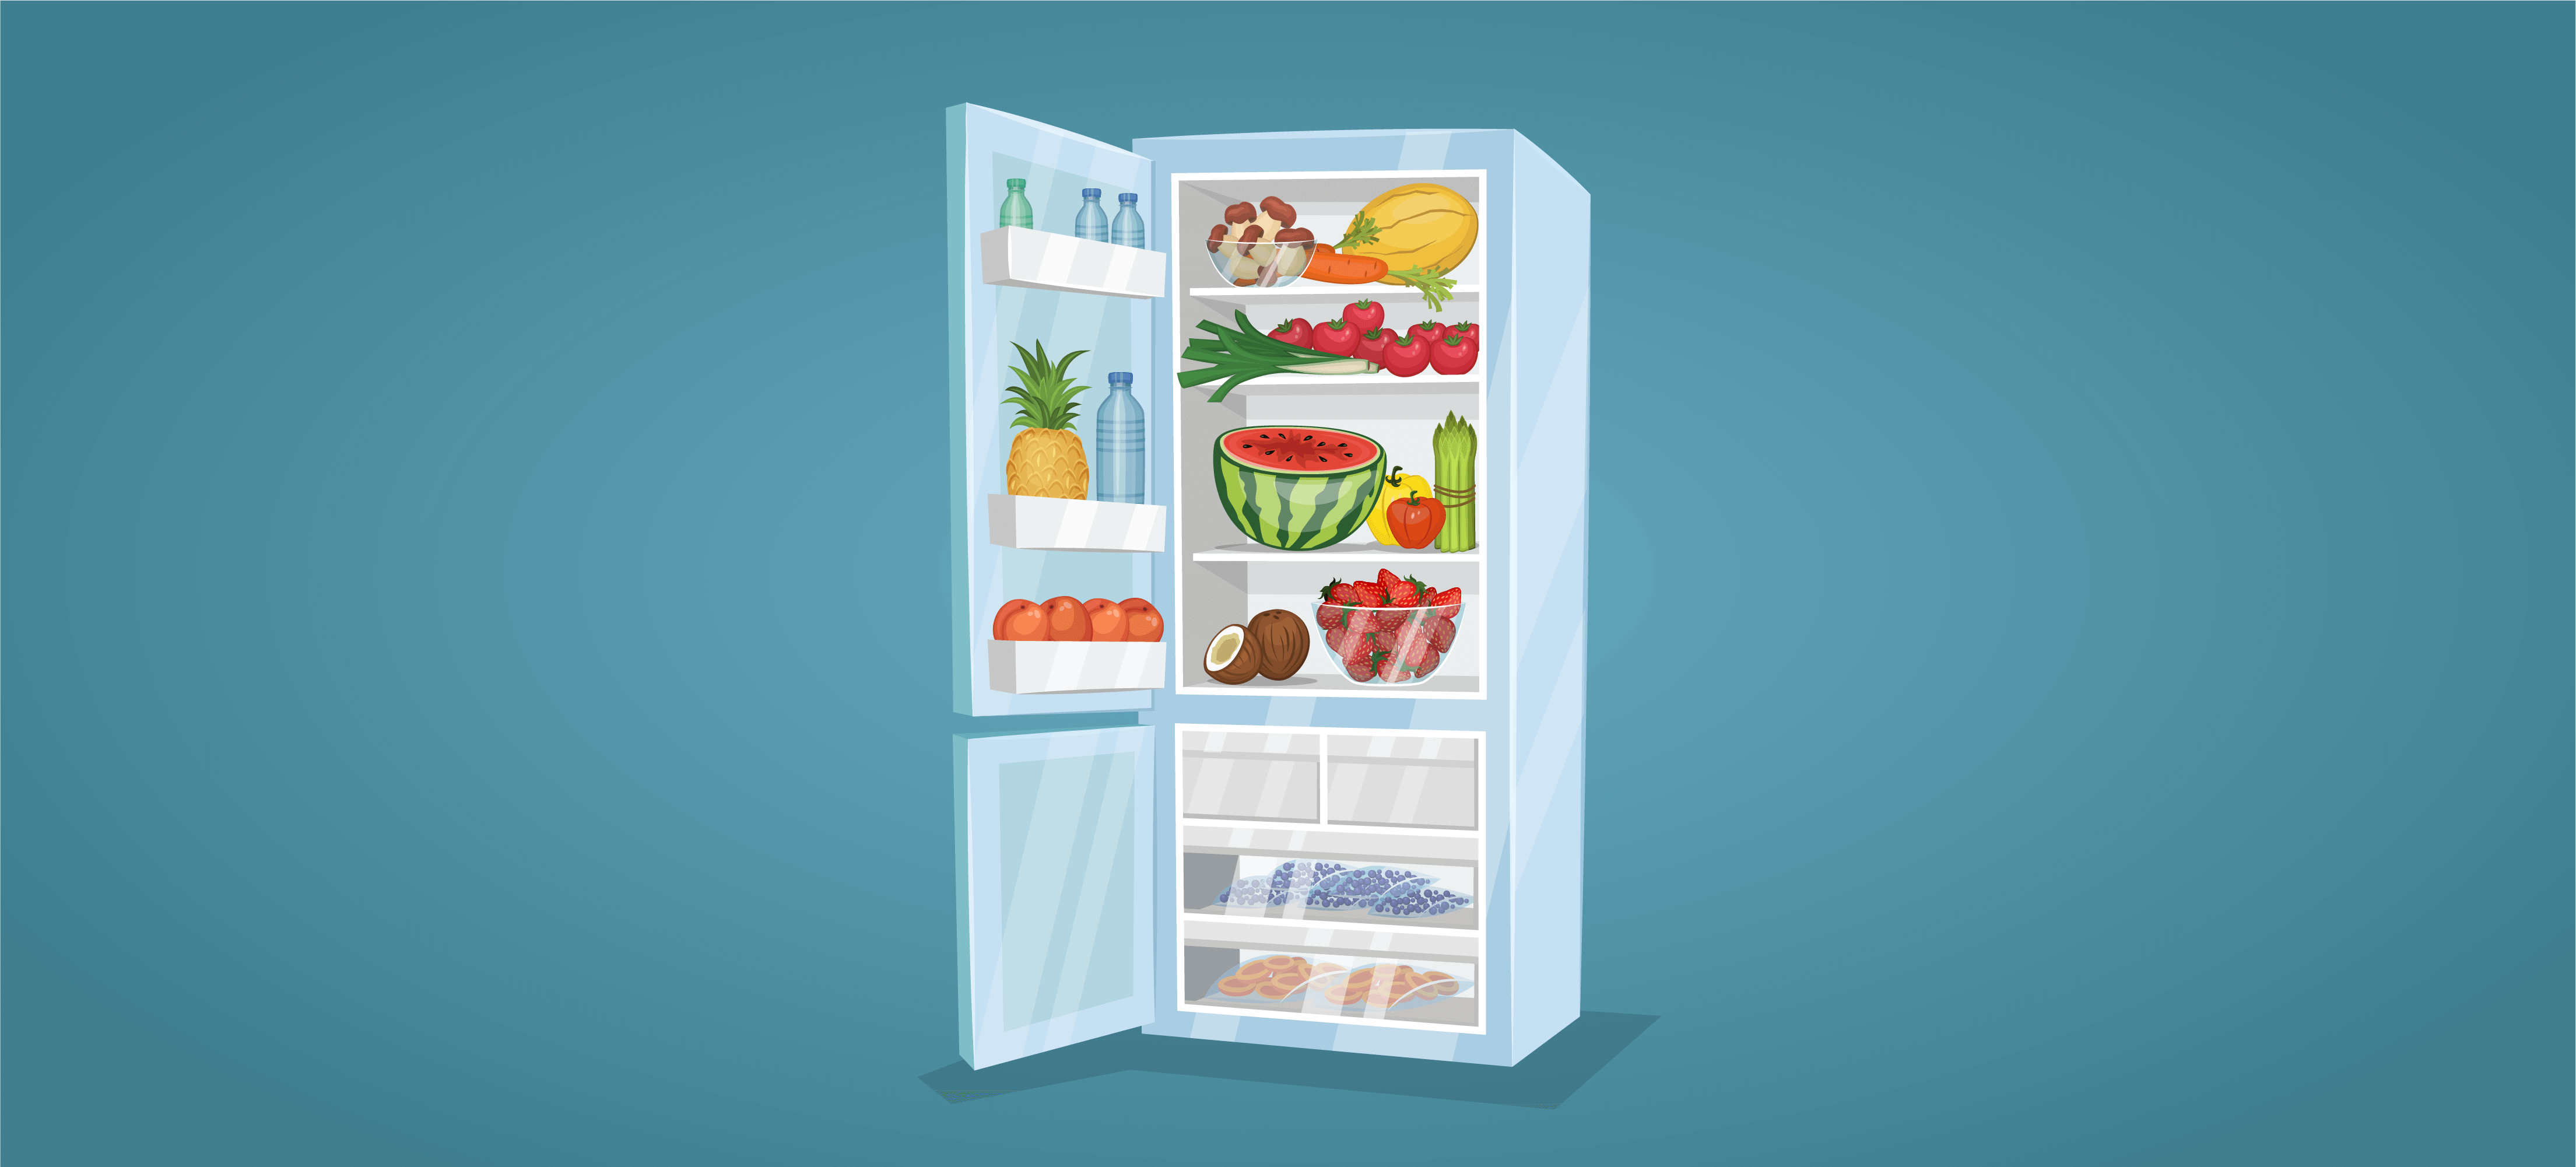 cum aleg cel mai bun frigider pentru acasa ghidul cumparatorului si ce trebuie luat in considerare pentru a alege dintre cele mai bune frigidere si dintre cele mai bune marci de frigidere